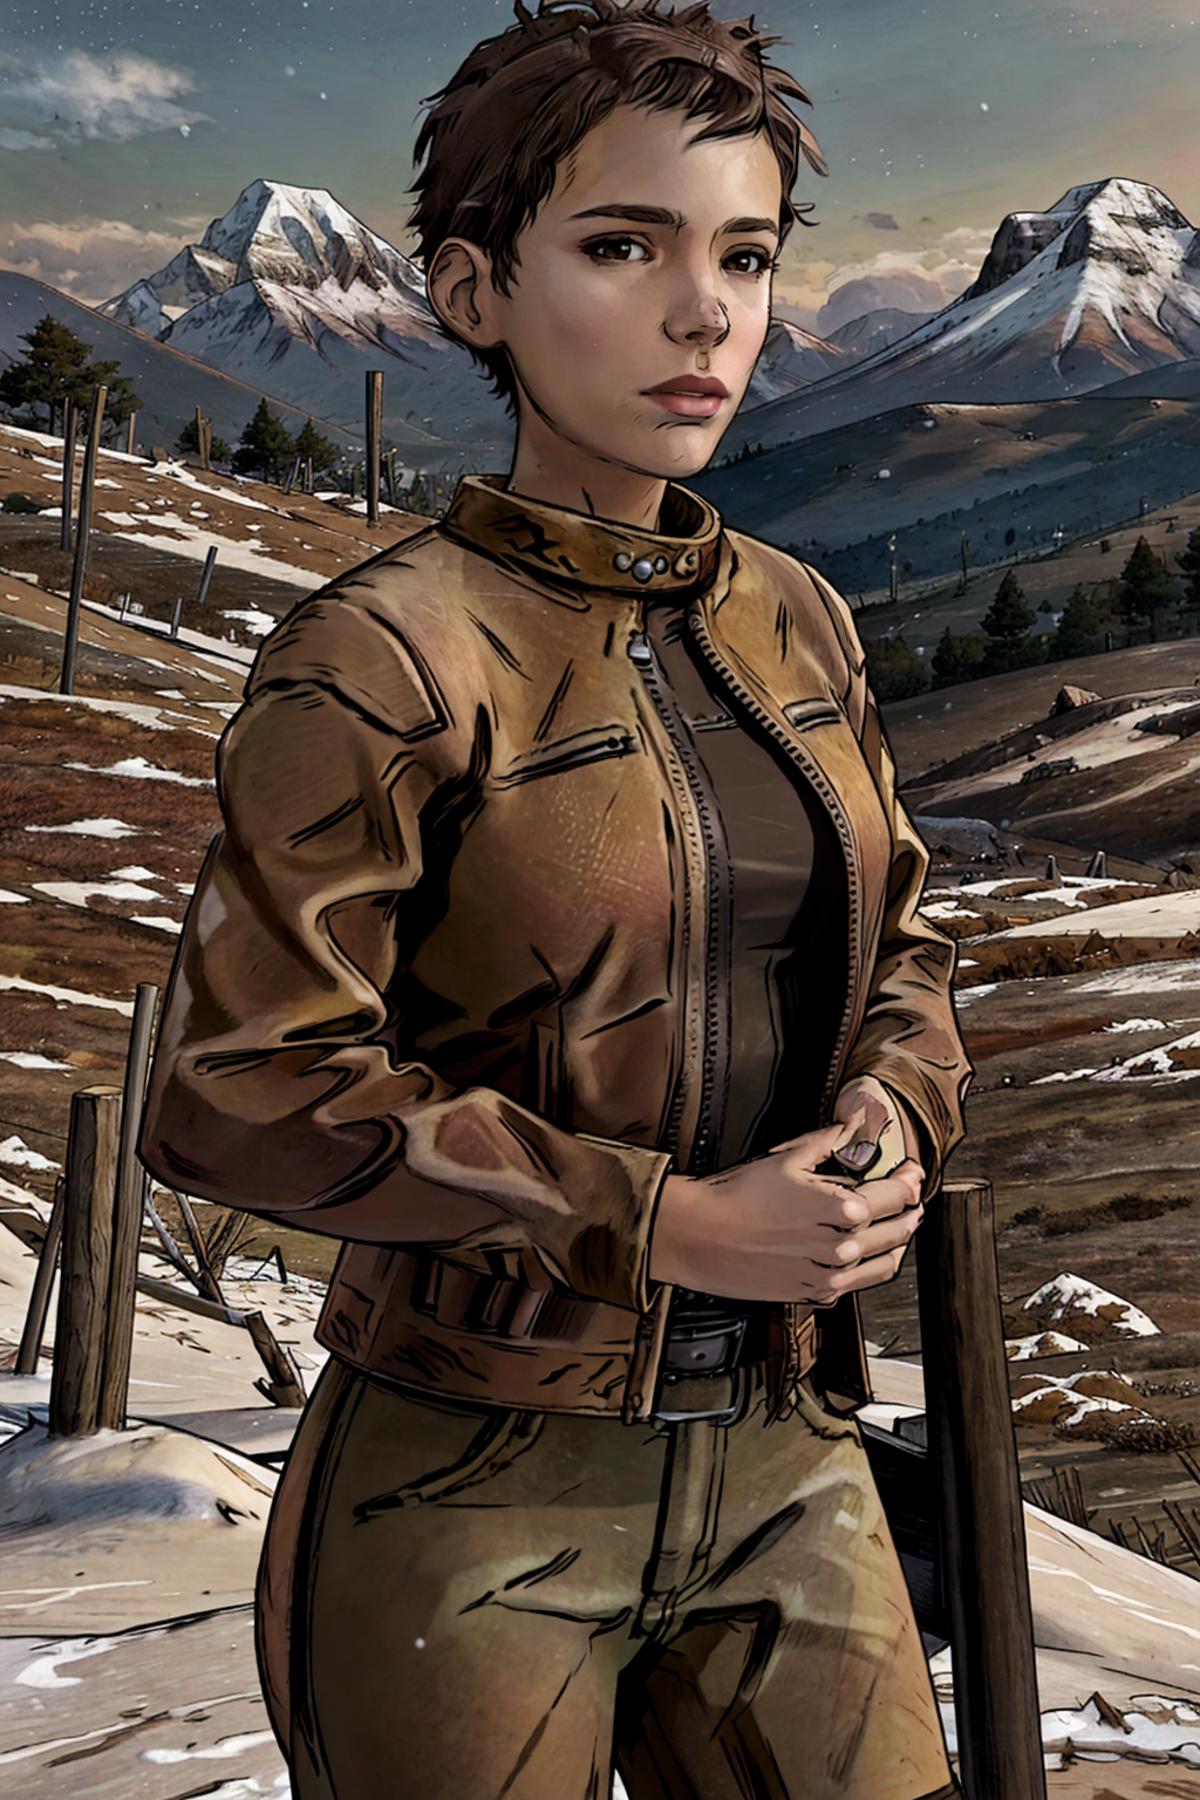 Jane from Telltale's The Walking Dead image by InfernoKun